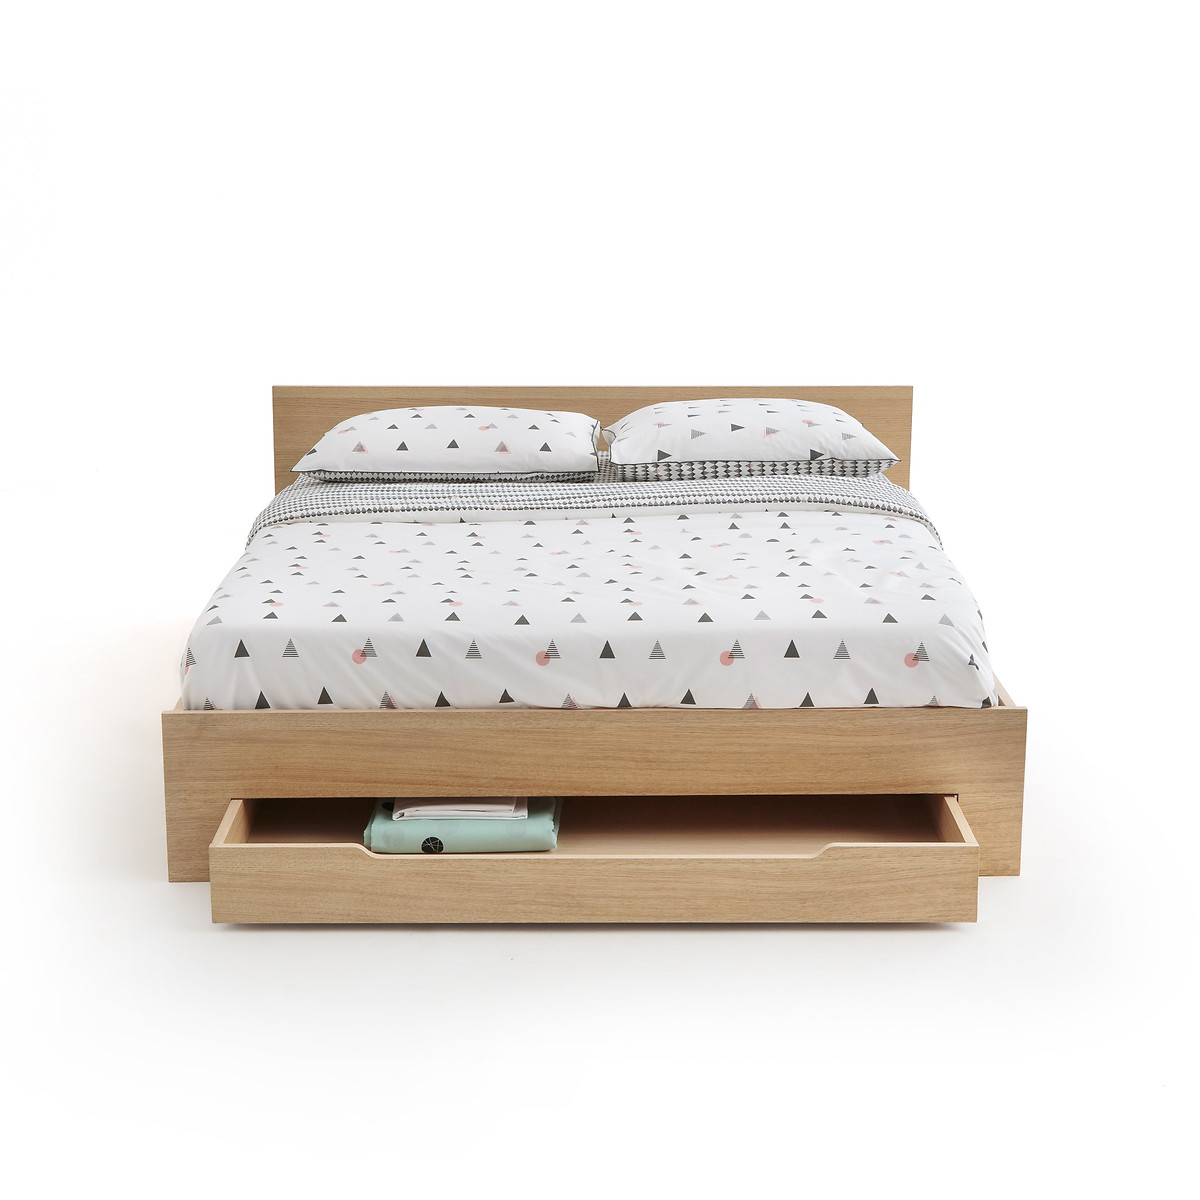 Кровать La Redoute С каркасом для матраса и выдвижным ящиком CRAWLEY 160 x 200 см каштановый, размер 160 x 200 см - фото 5